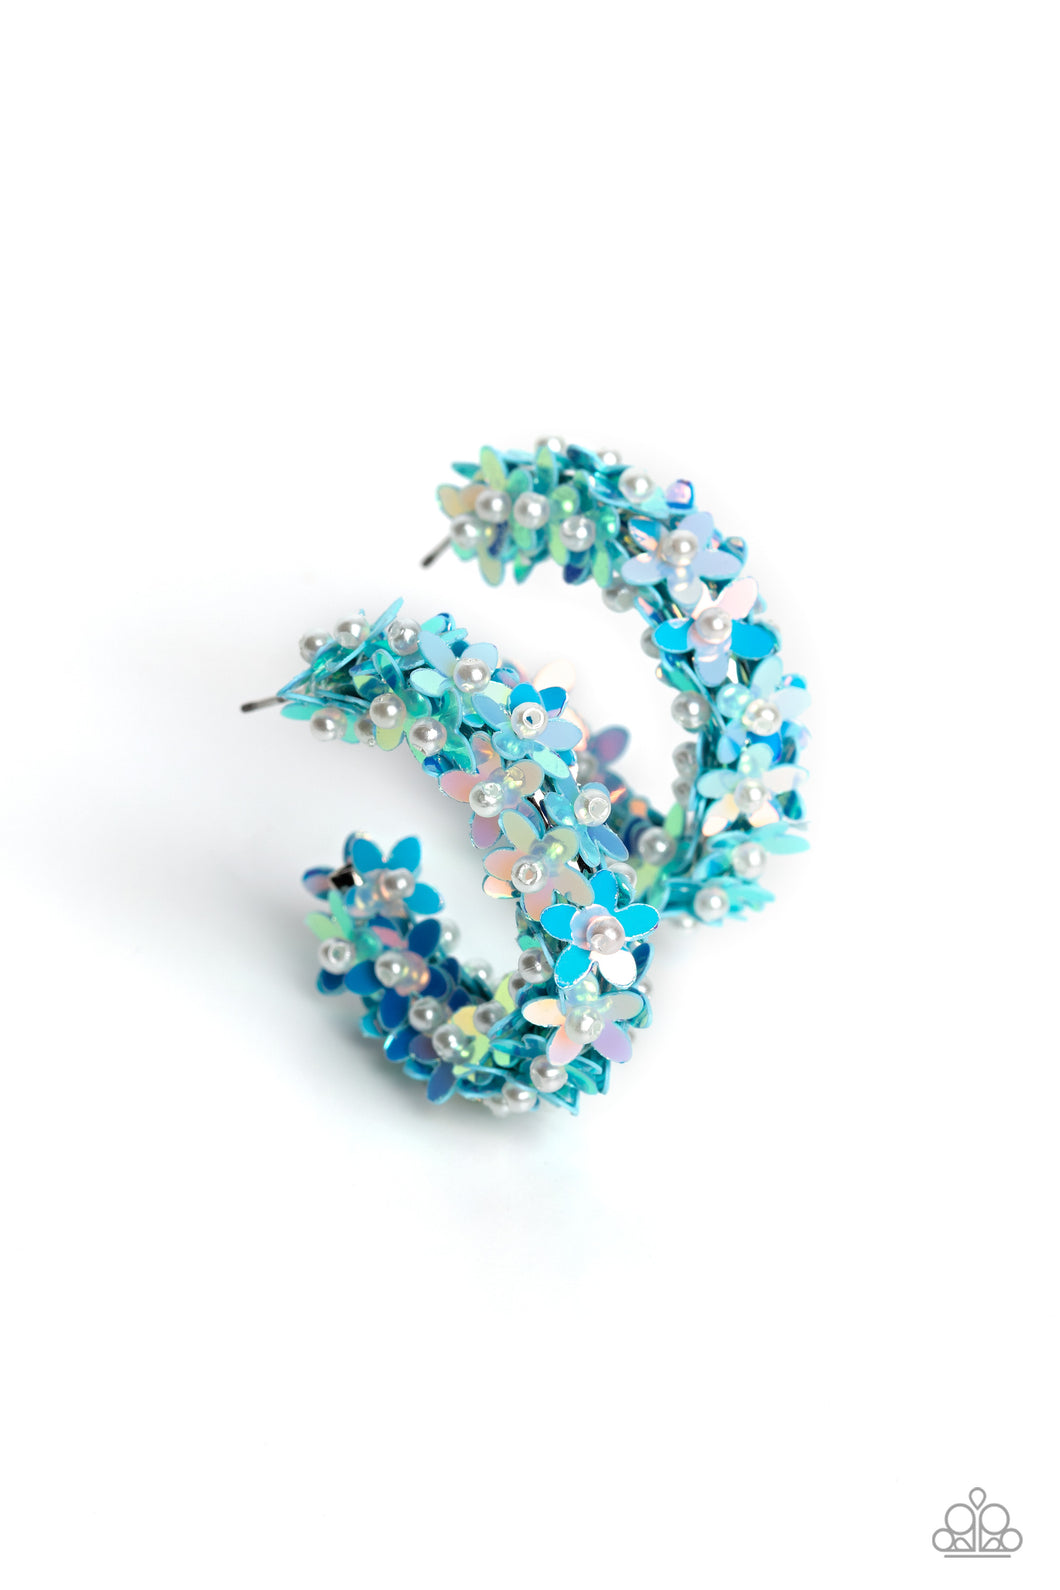 Fairy Fantasia - Blue Iridescent Earrings